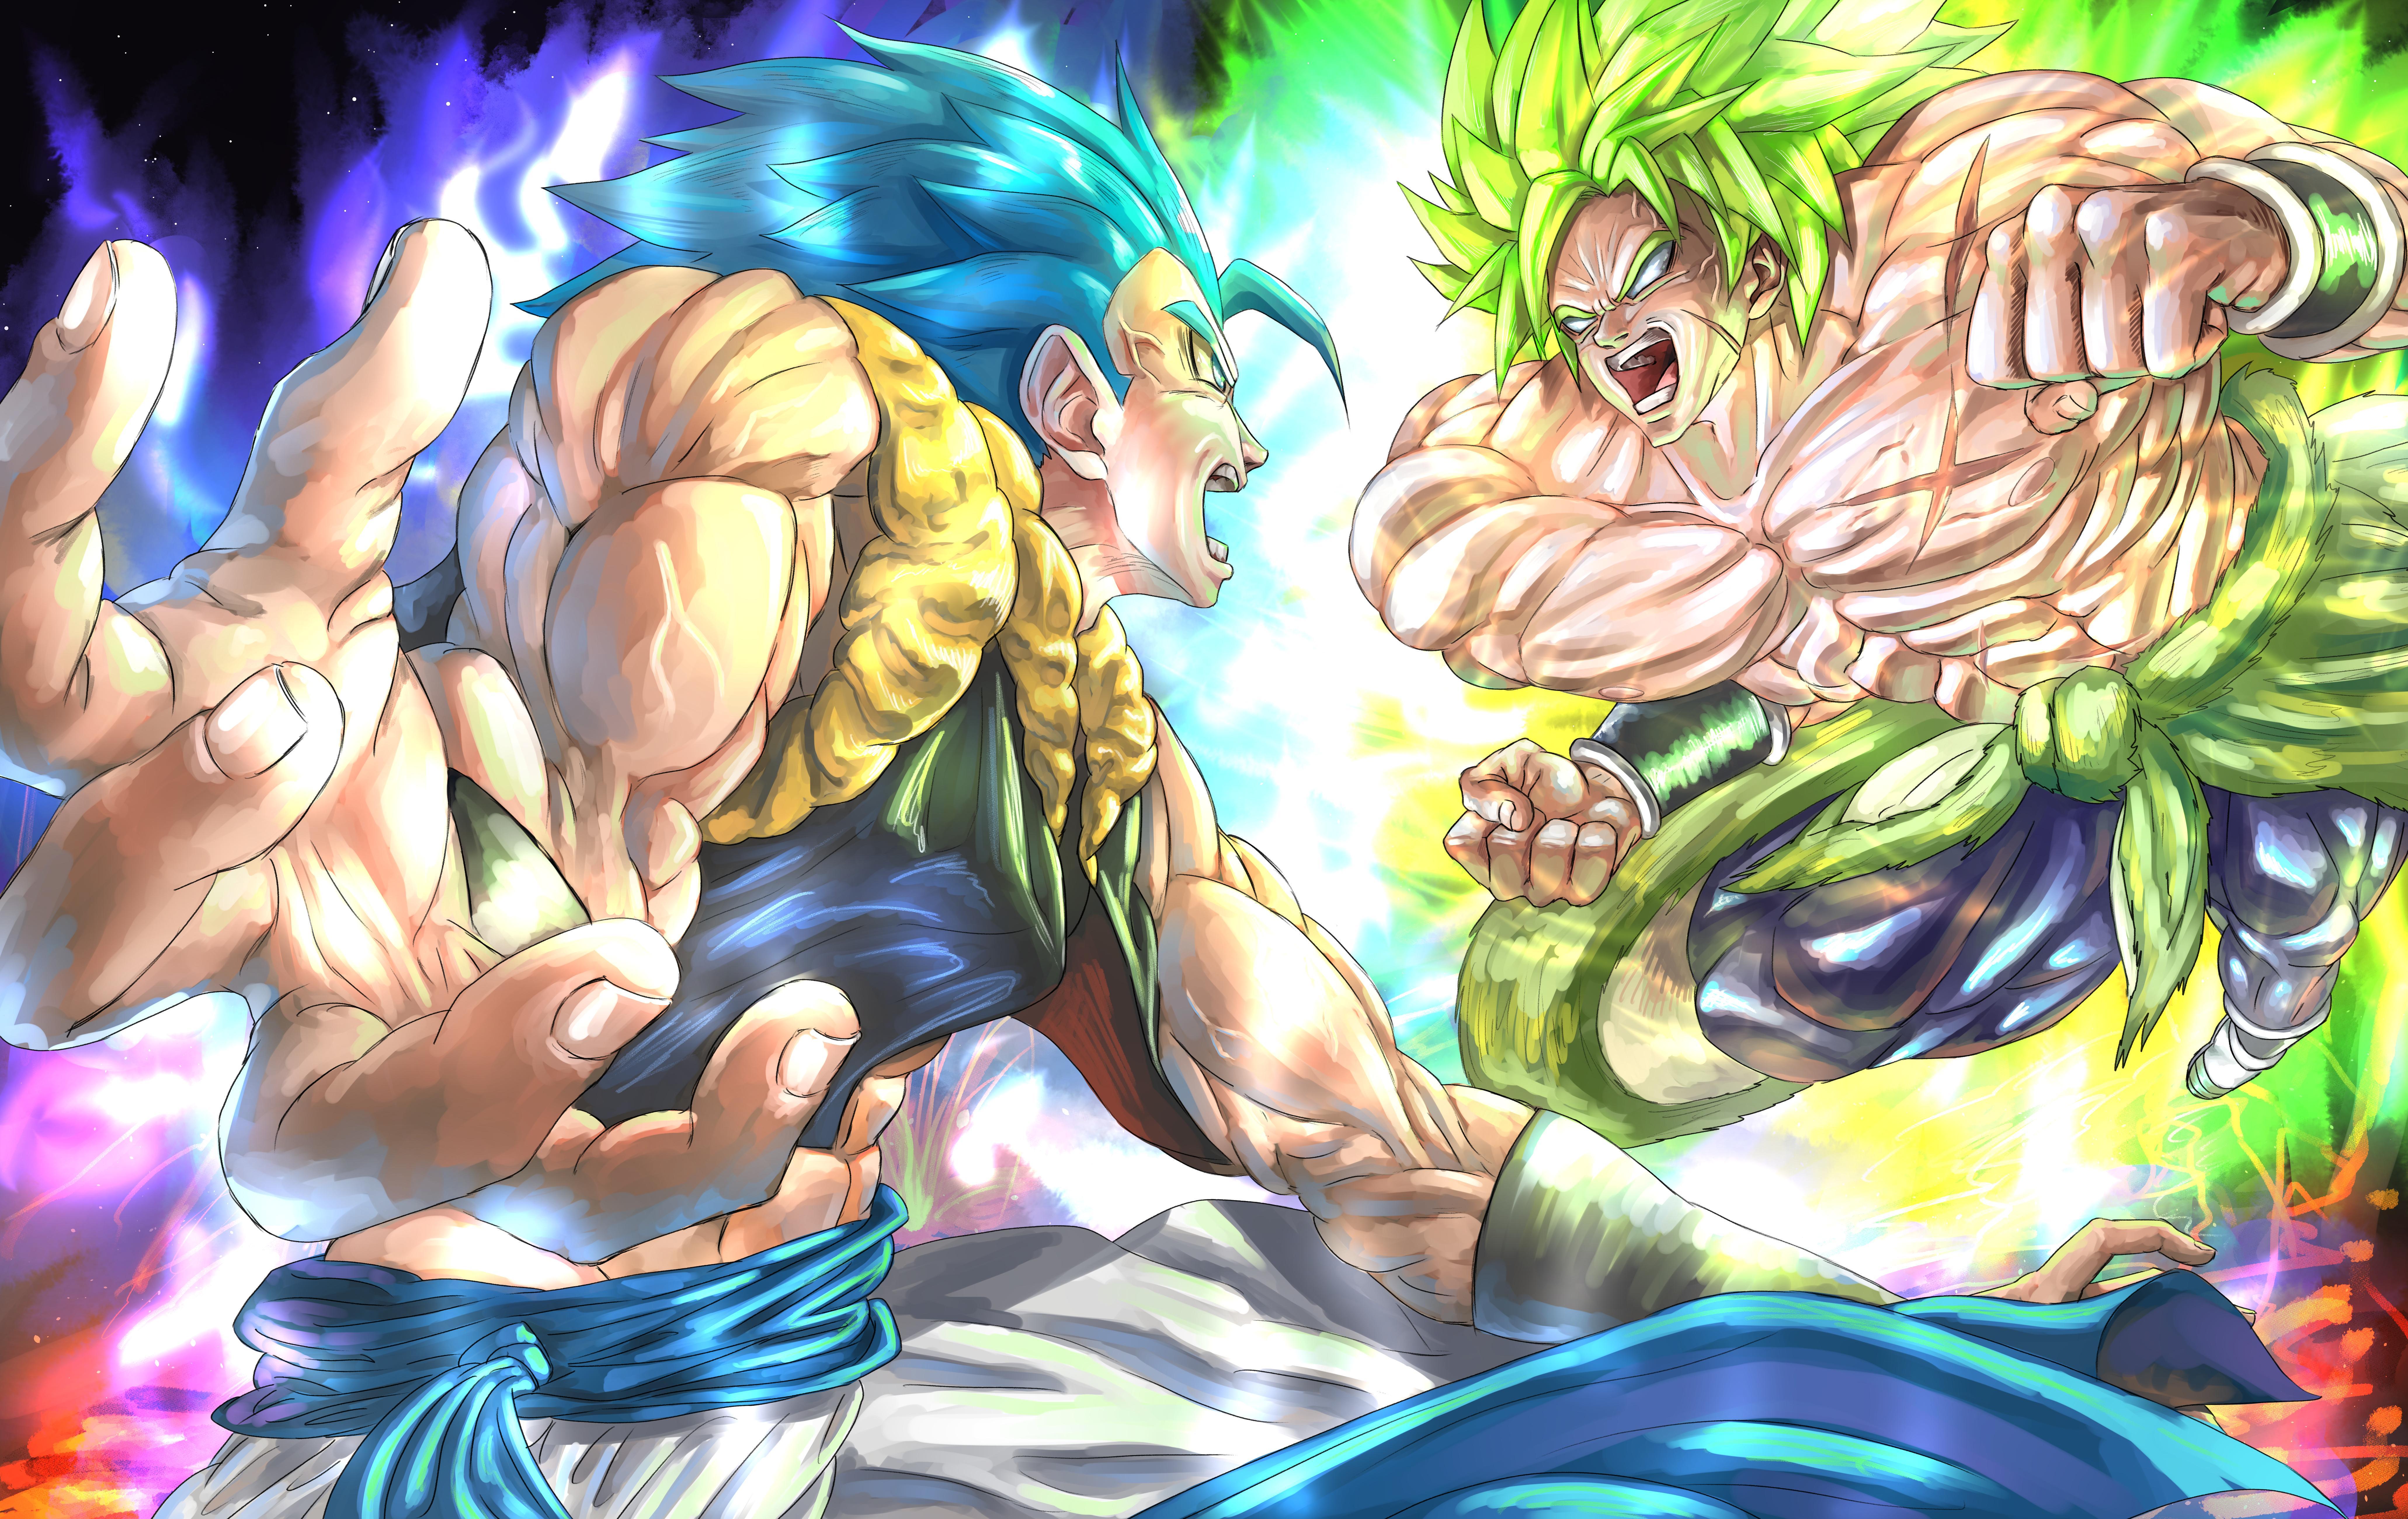 6. Goku Blue Hair vs Broly - wide 9